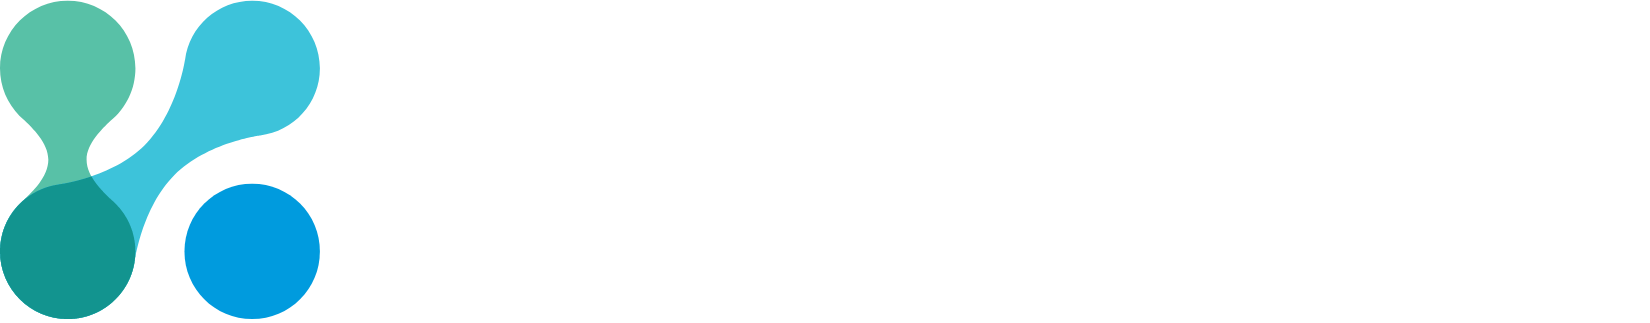 Kezar Life Sciences logo large for dark backgrounds (transparent PNG)